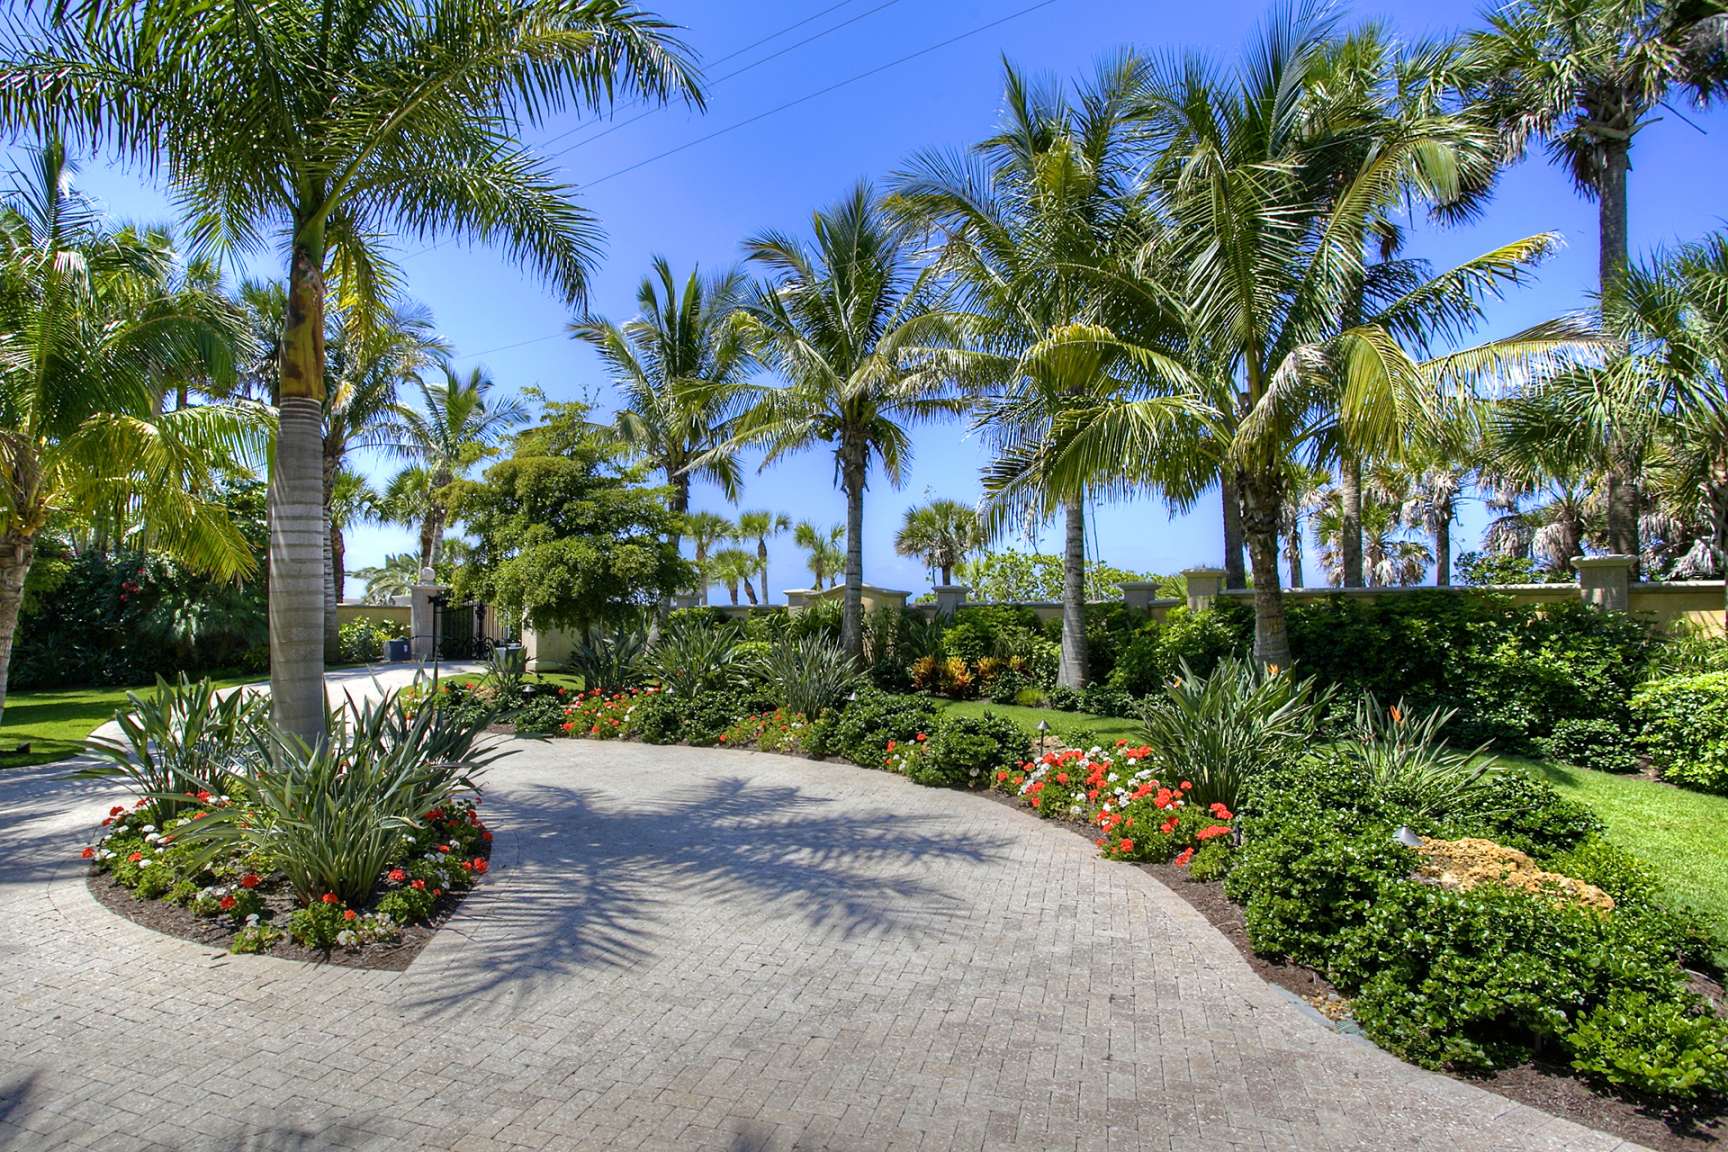 Landscape Design Tips For Your SW Florida Home - Wilhelm